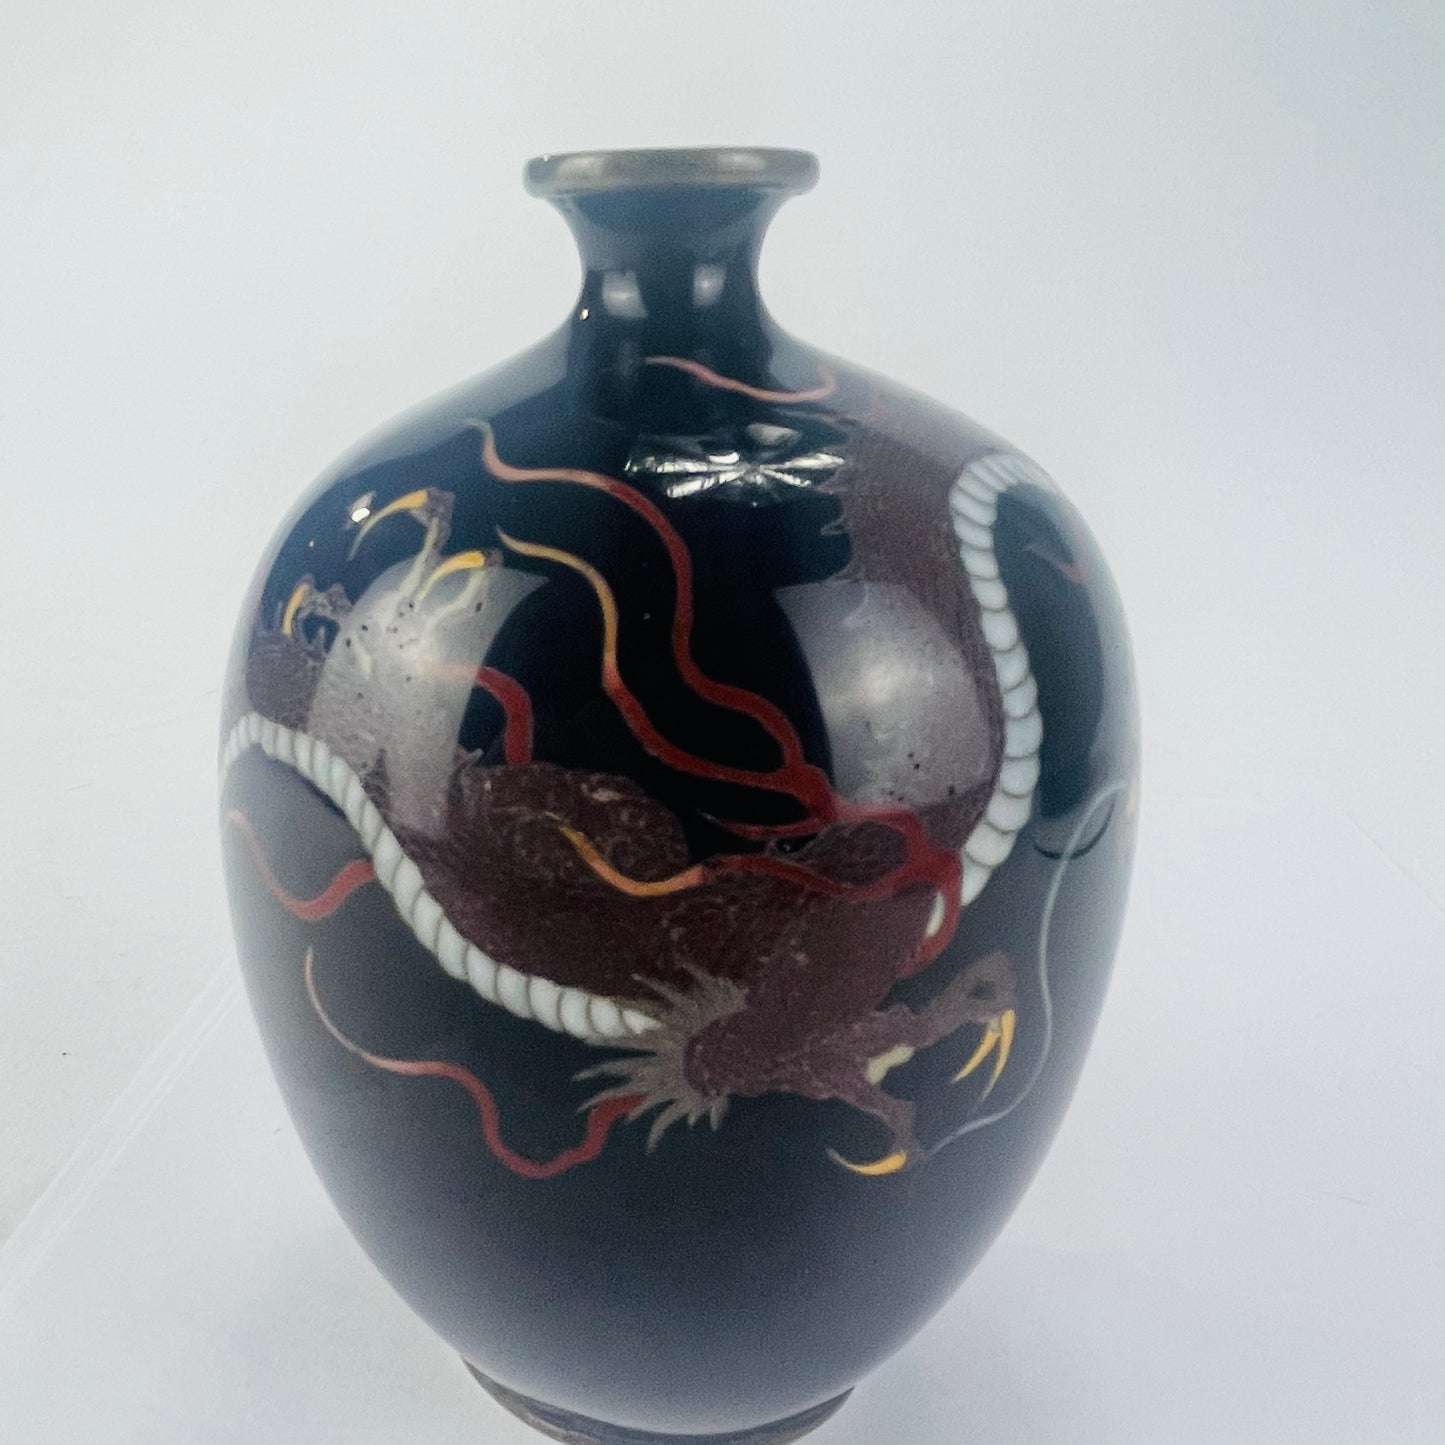 Antique Japanese Meiji Era (c1880) Cloisonné Vase Red Dragon 5”